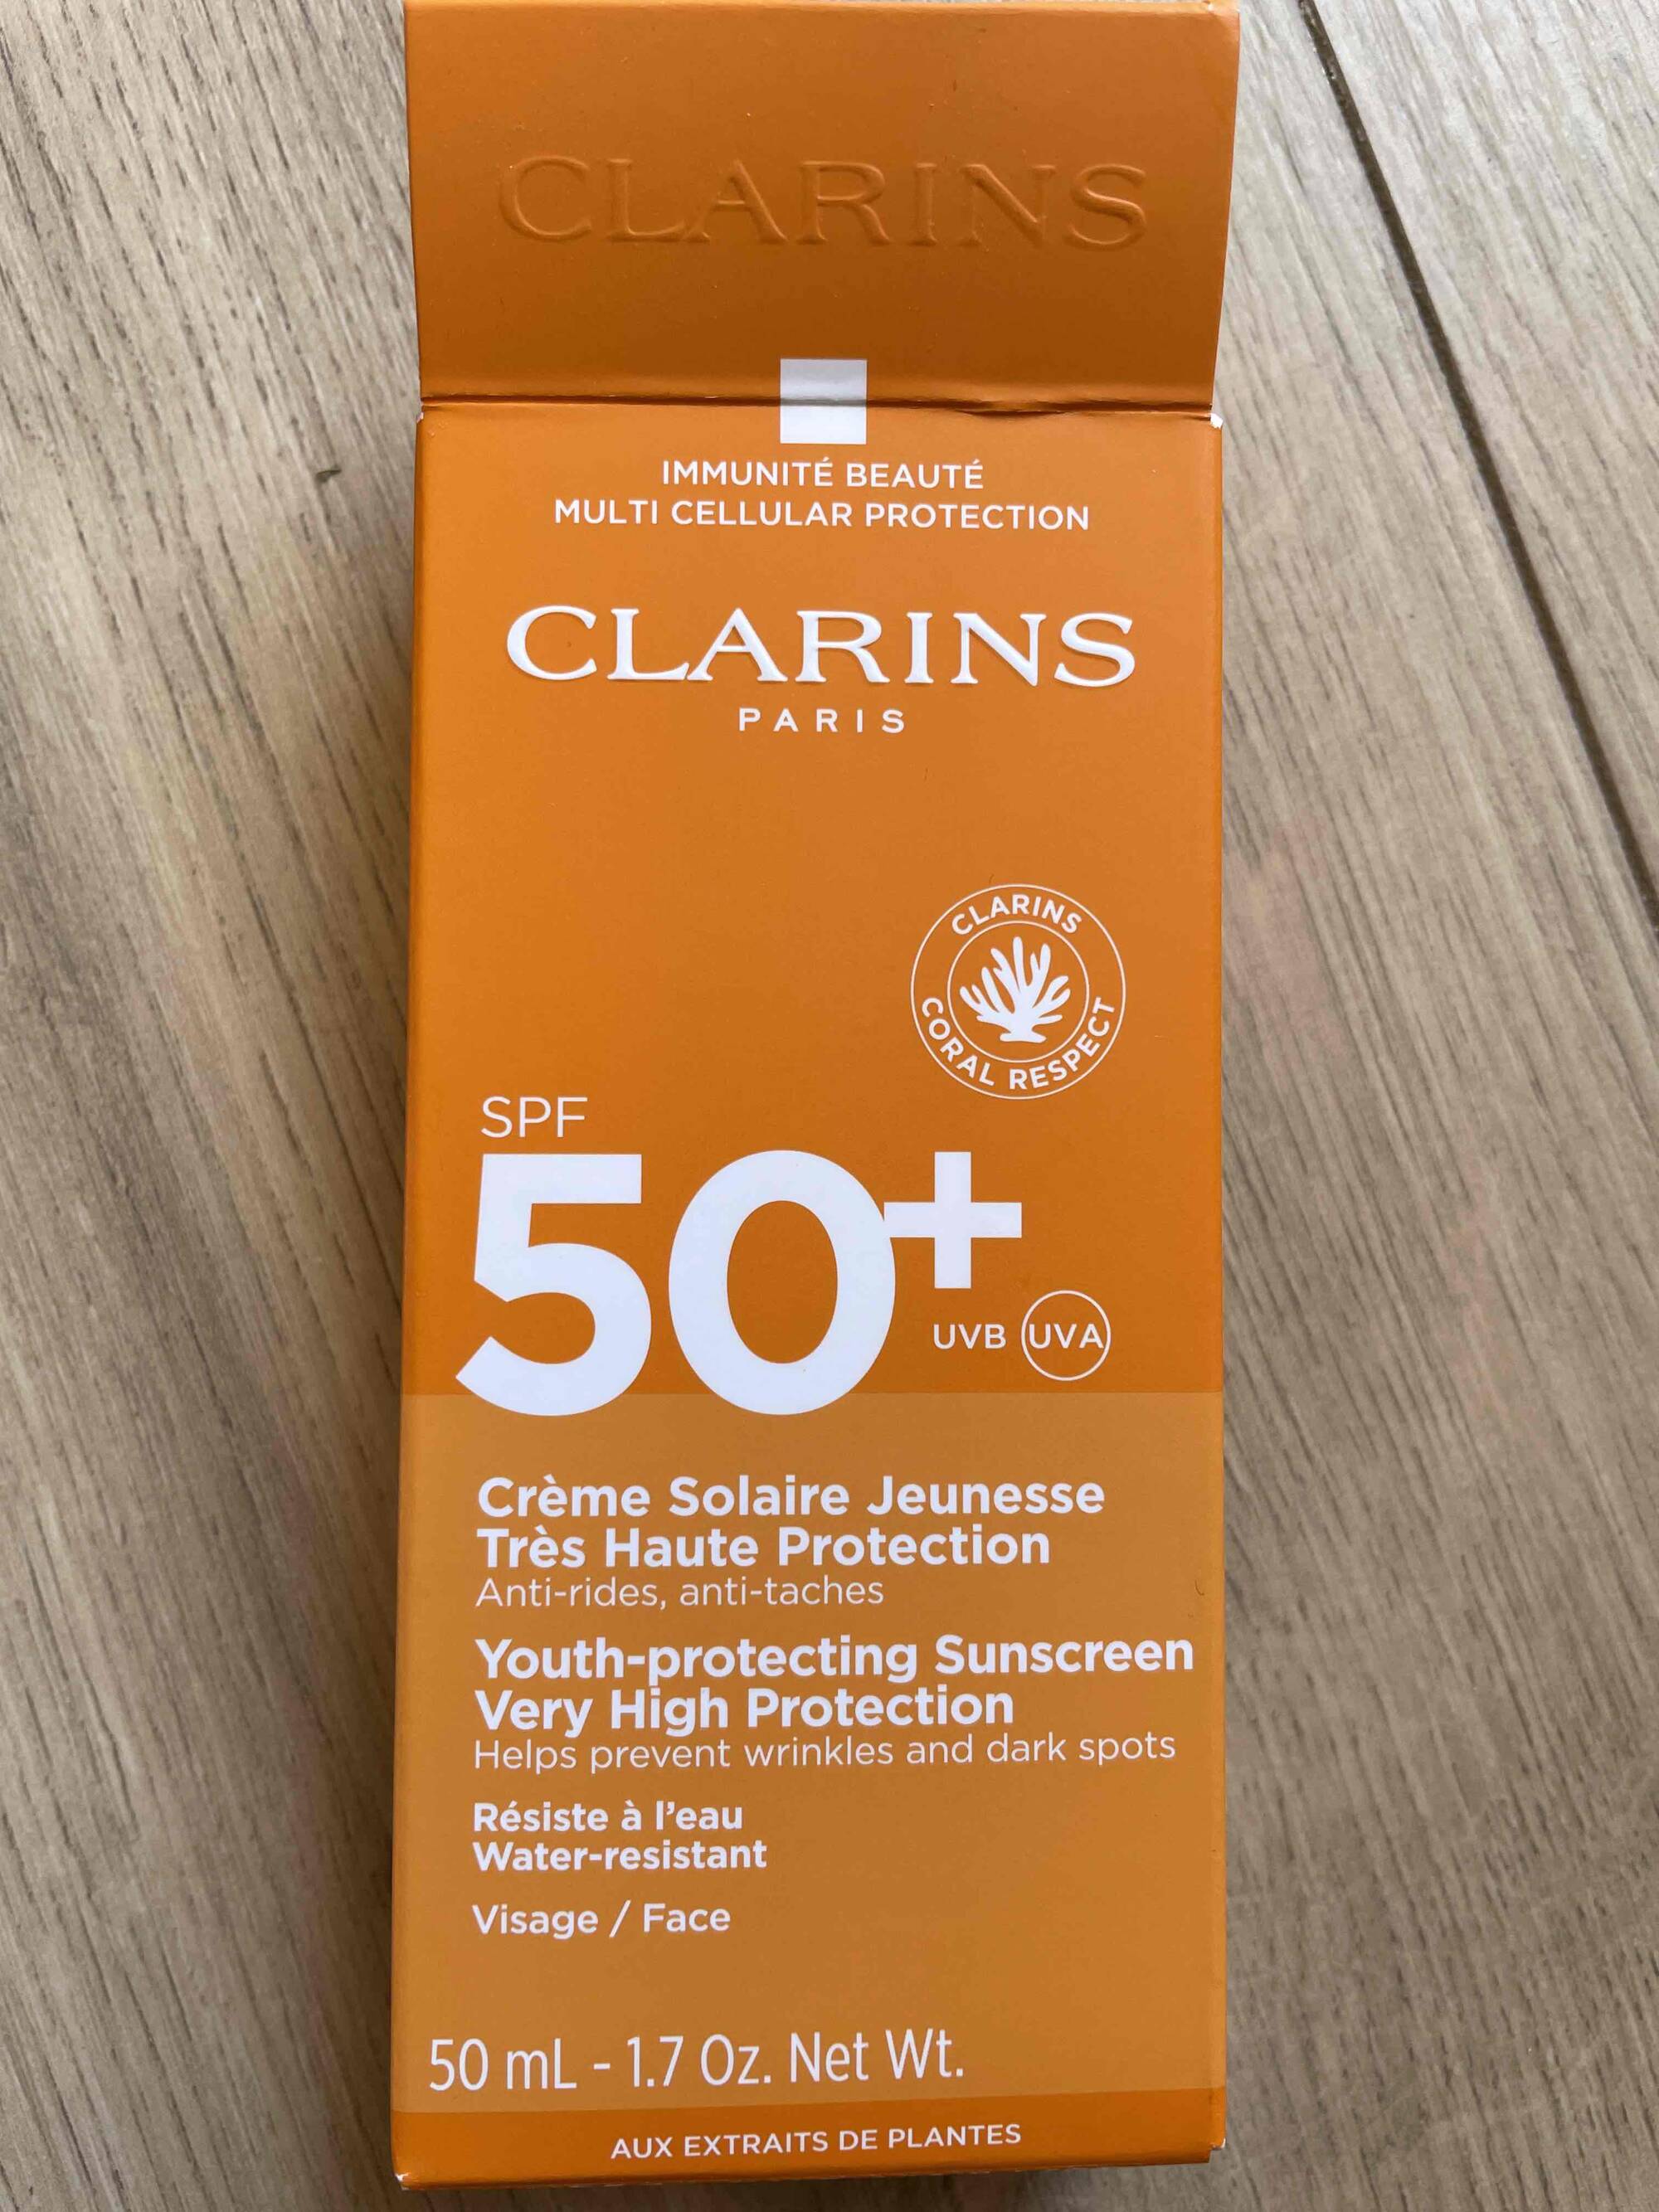 CLARINS - Crème solaire jeunesse spf50+